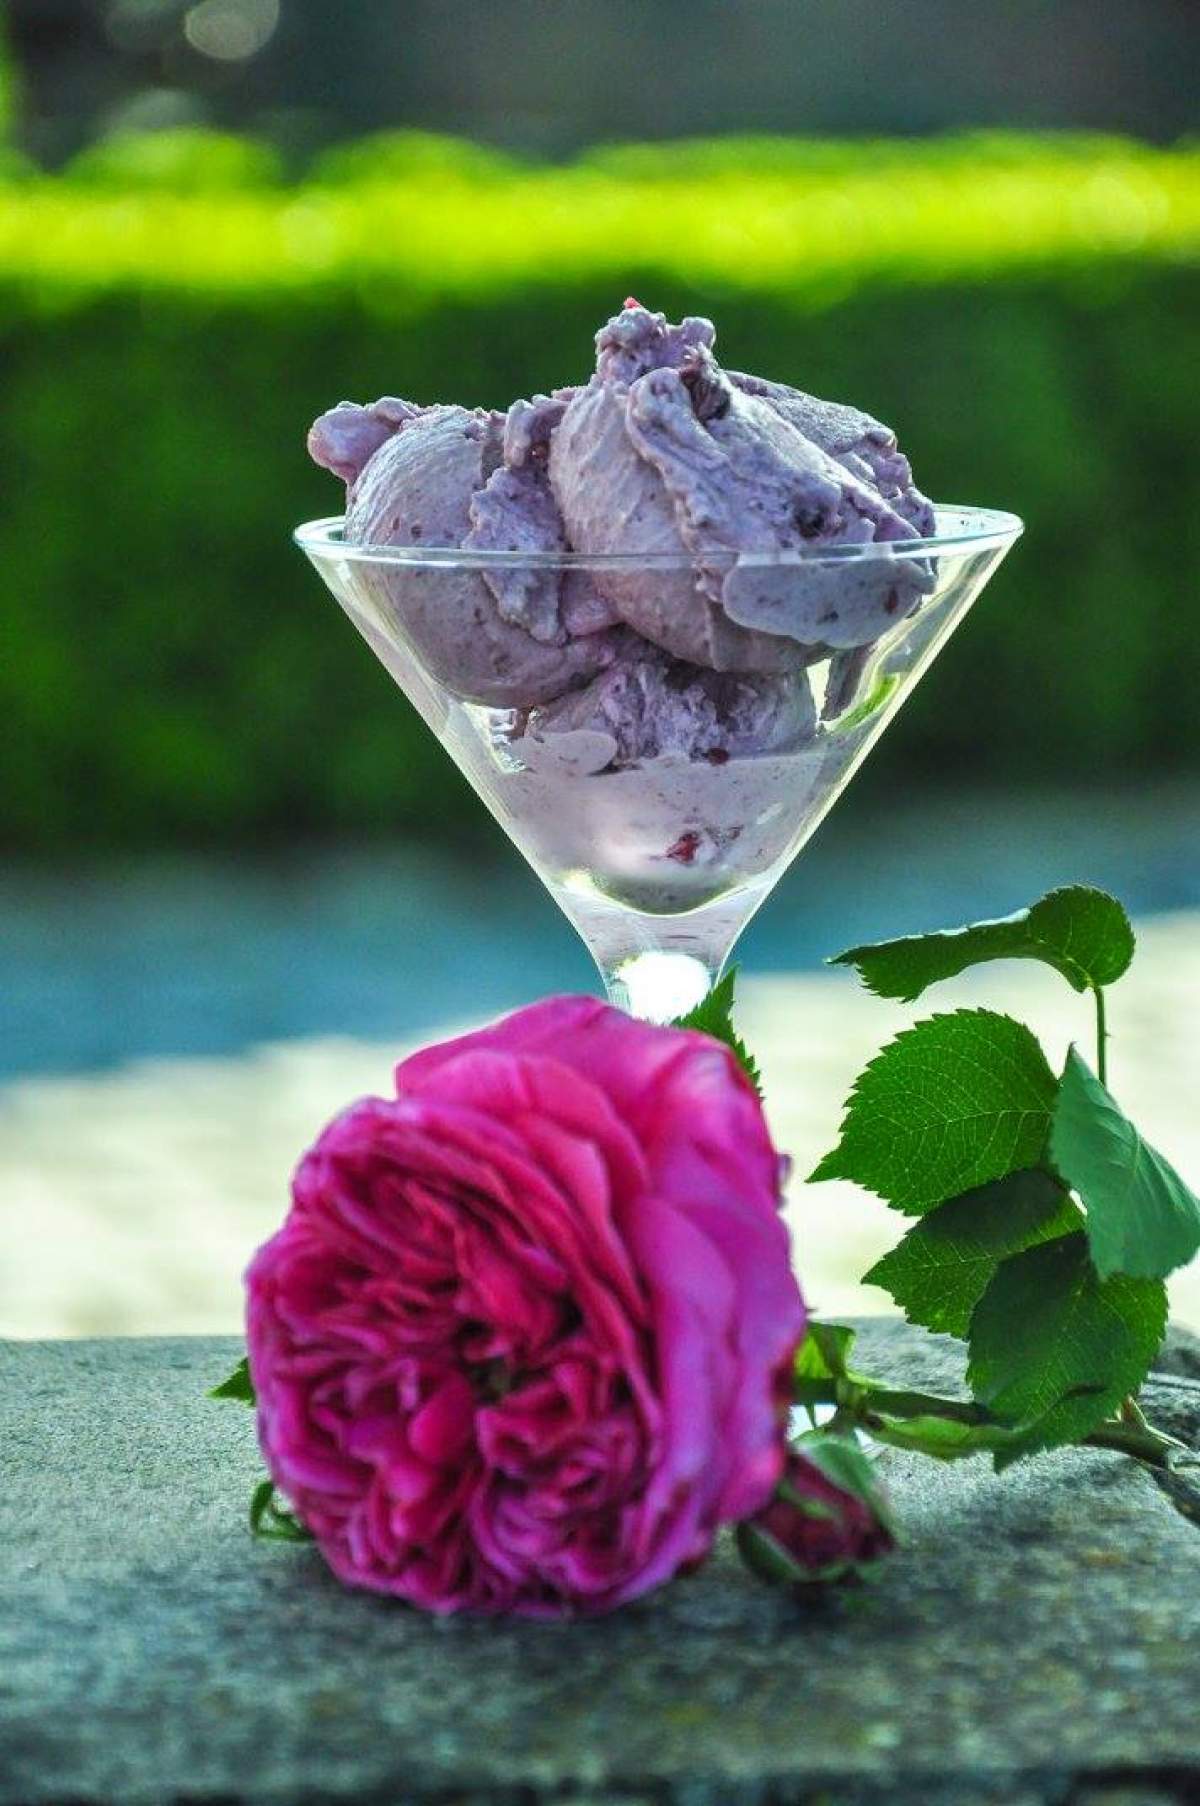 Înghețată de trandafiri. O rețetă specială, care îți va încânta papilele gustative